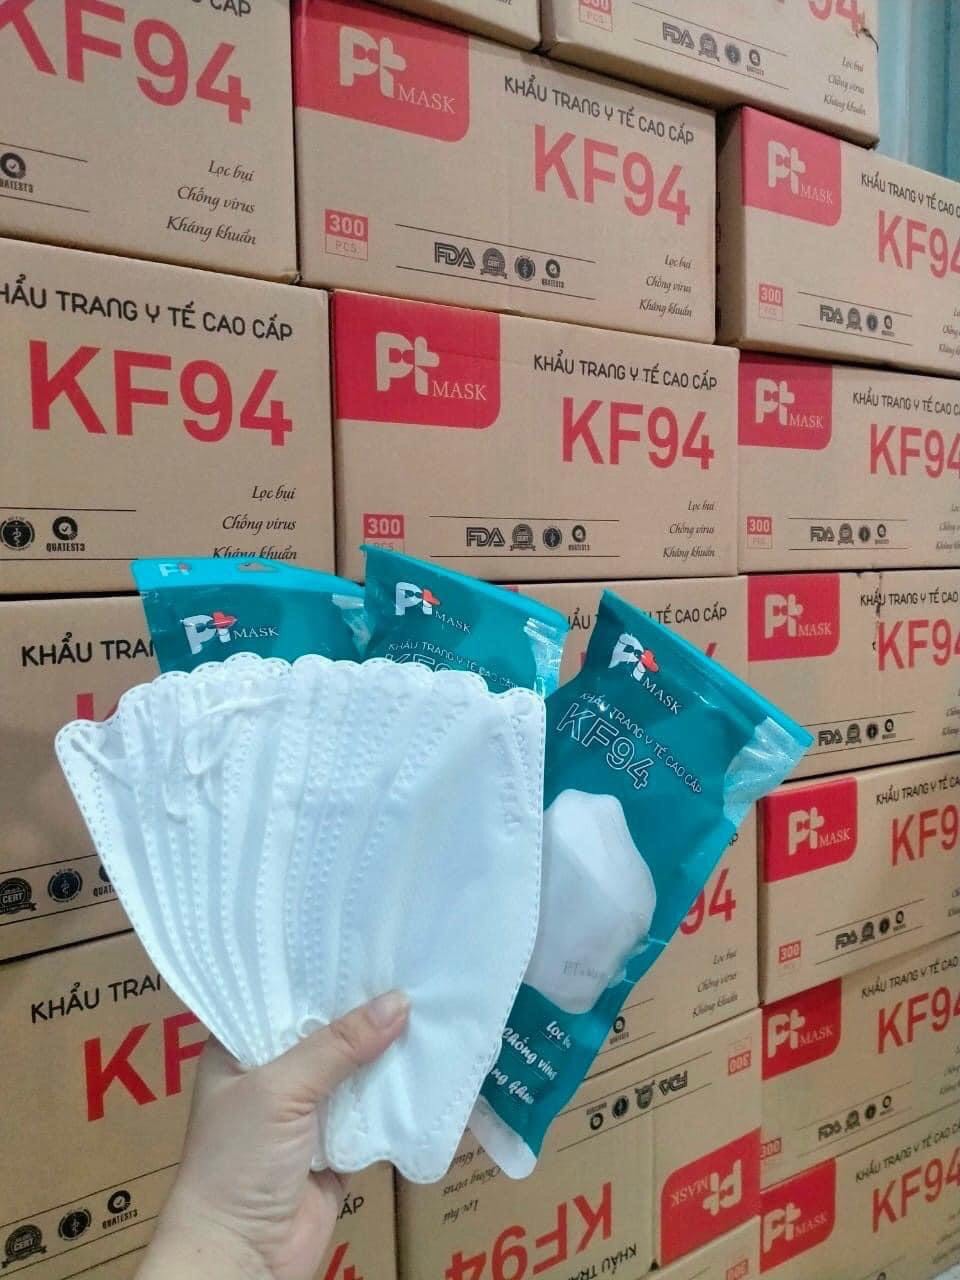 [Sale] thùng 300 cái khẩu trang kf94 PT Mask, 4 lớp, dầy dặn/khẩu trang KF94 kháng khuẩn tiêu chuẩn Hàn Quốc/KF94 Hàn Quốc/khẩu trang 4D